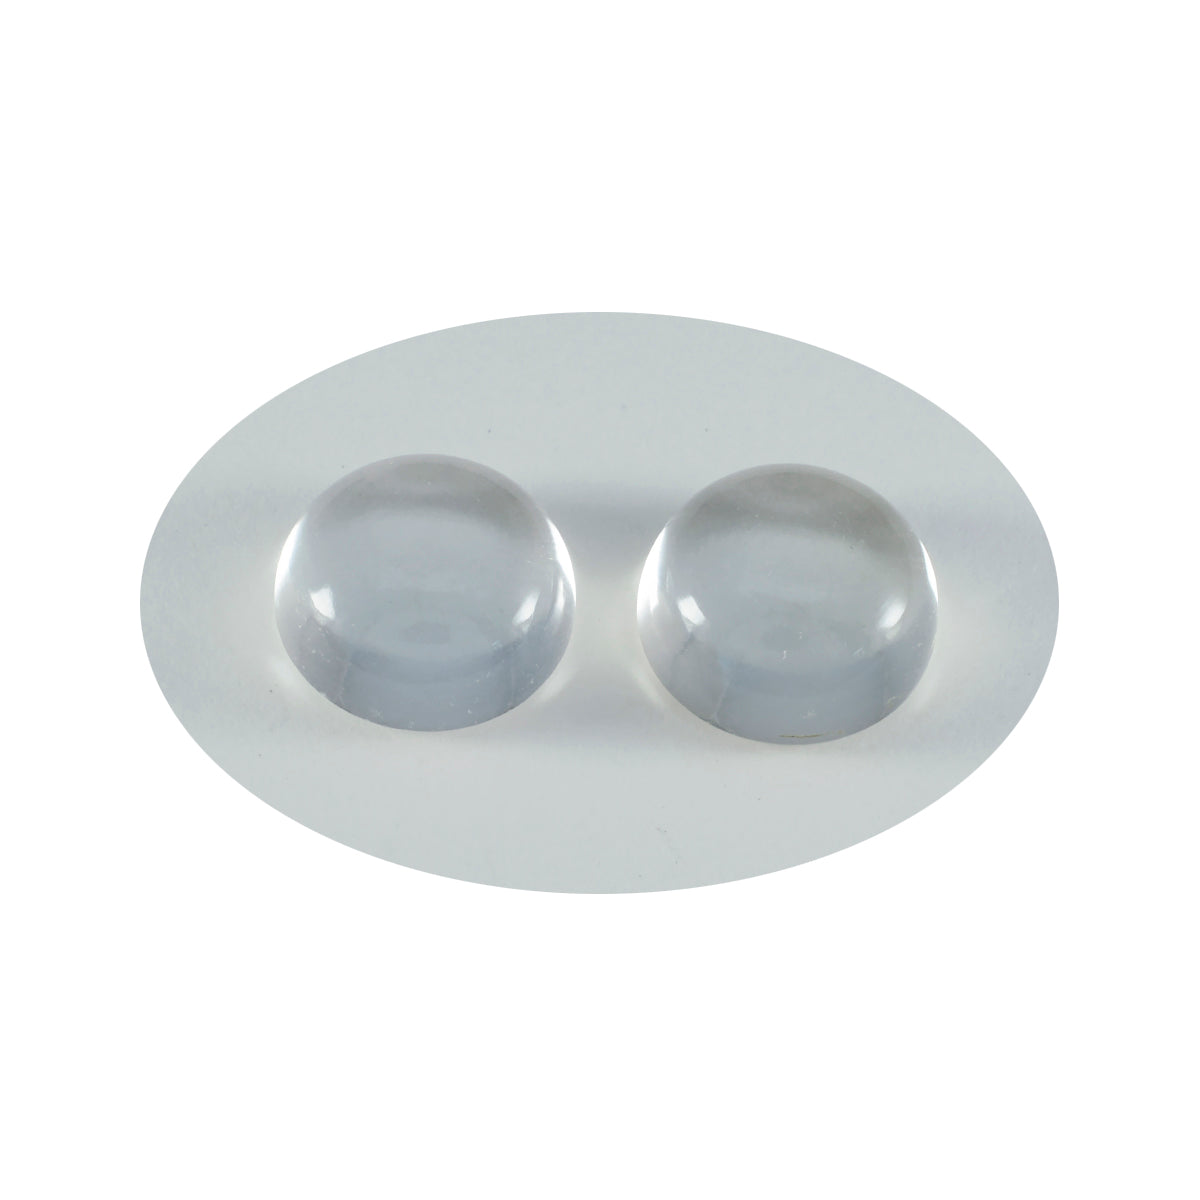 Riyogems 1 Stück weißer Kristallquarz-Cabochon, 12 x 12 mm, runde Form, attraktive, hochwertige lose Edelsteine